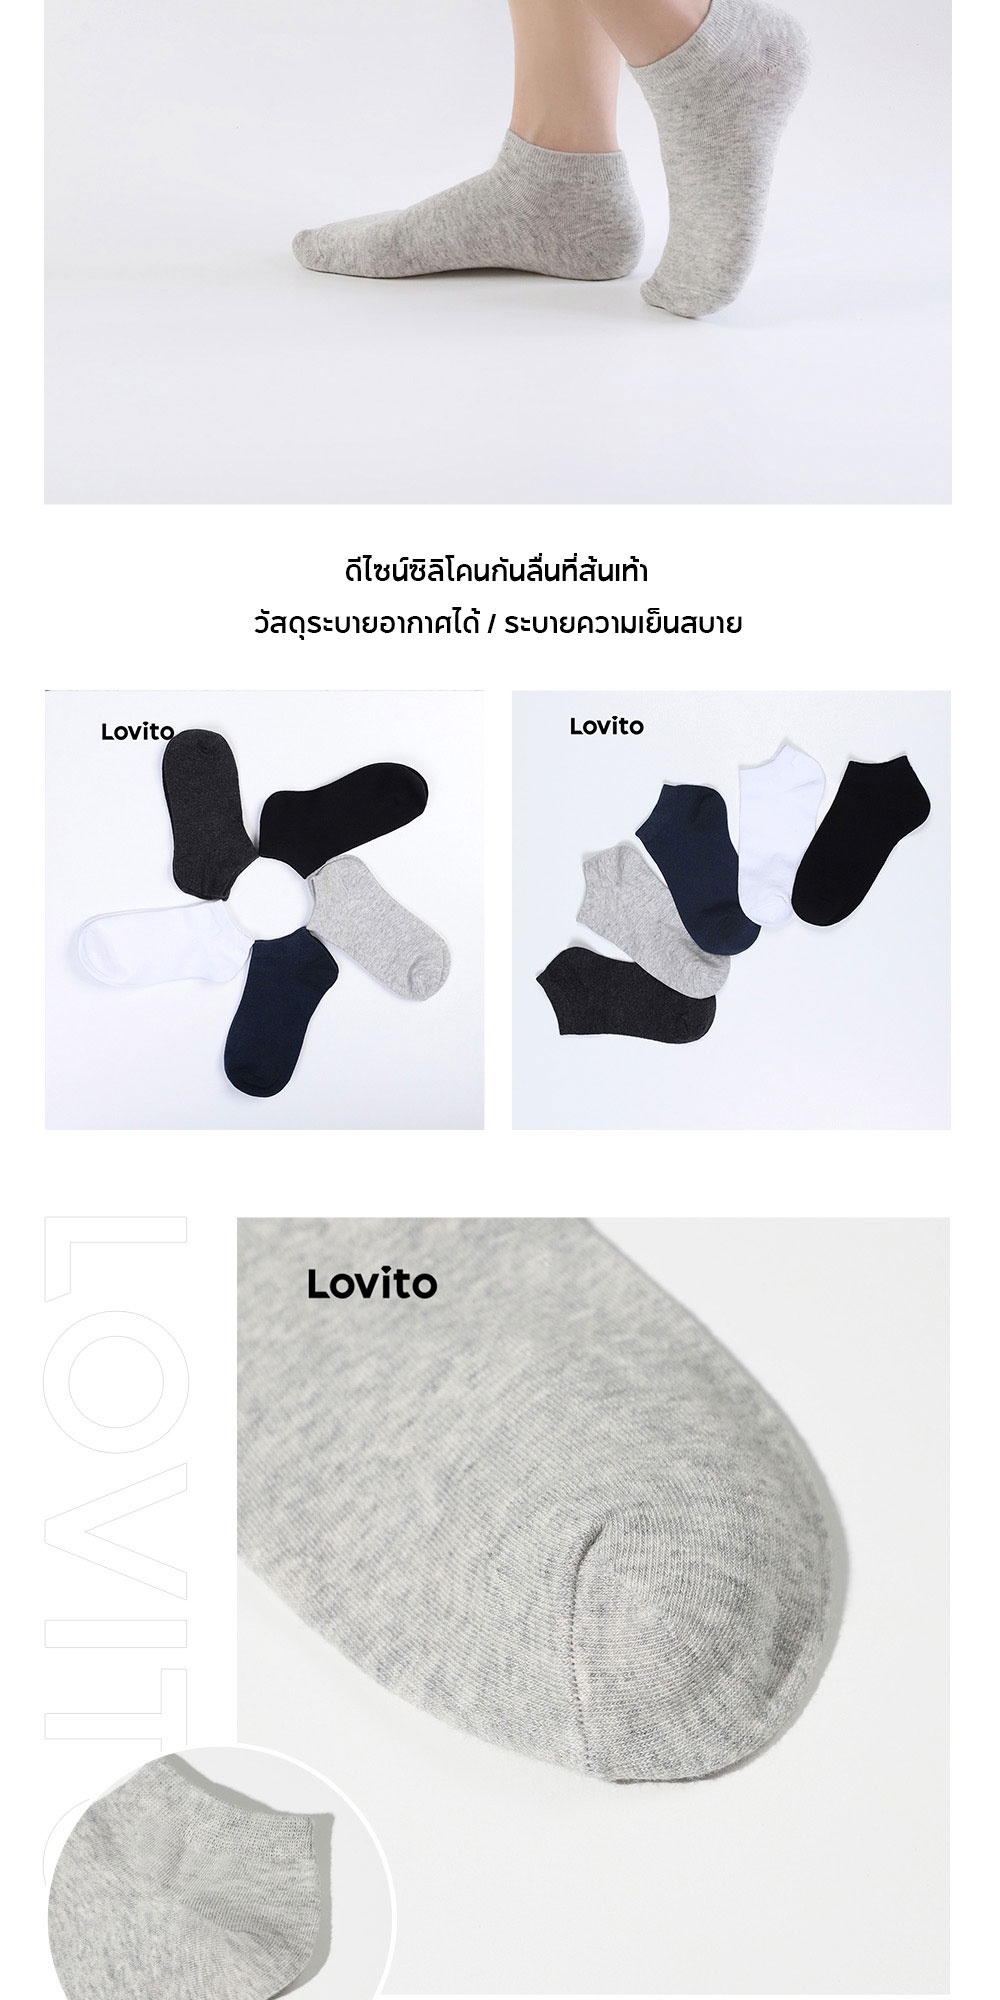 คำอธิบายเพิ่มเติมเกี่ยวกับ Lovito ถุงเท้าผ้าฝ้าย แบบซ่อนข้อ สีพื้น L001082 (สีดำ/น้ำเงิน/เทาเข้ม/เขียวอ่อน/ขาว)